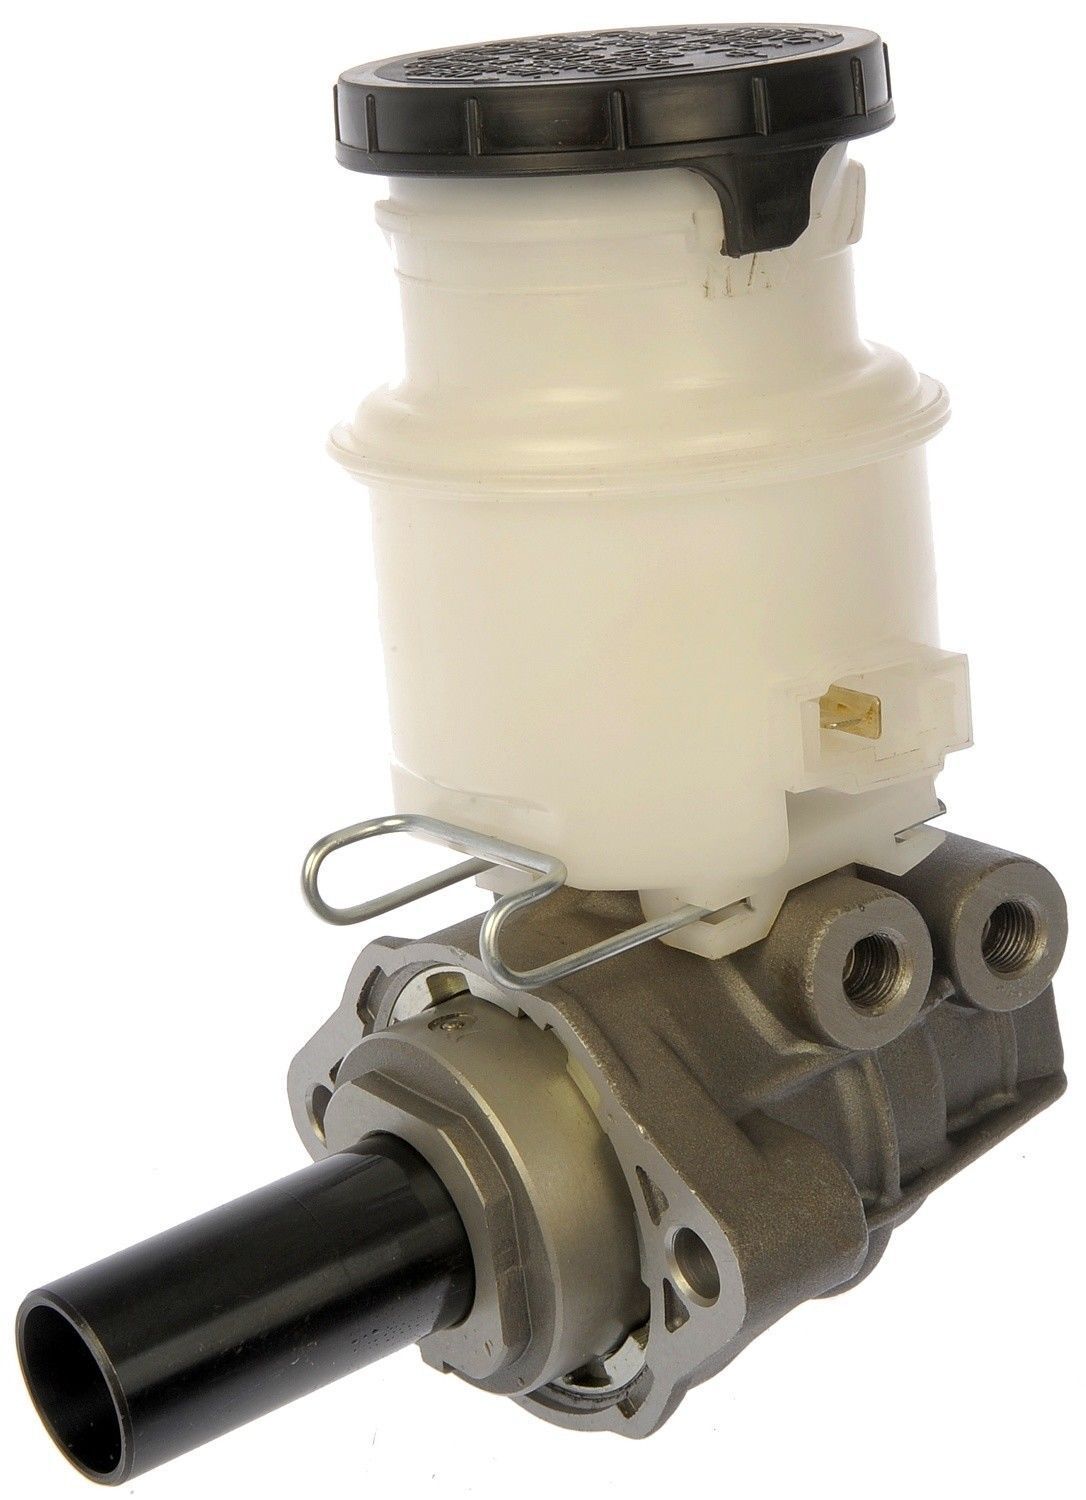 Brake master cylinder for Isuzu Trooper 94-02 Amigo 98-01 M630201 MC390131